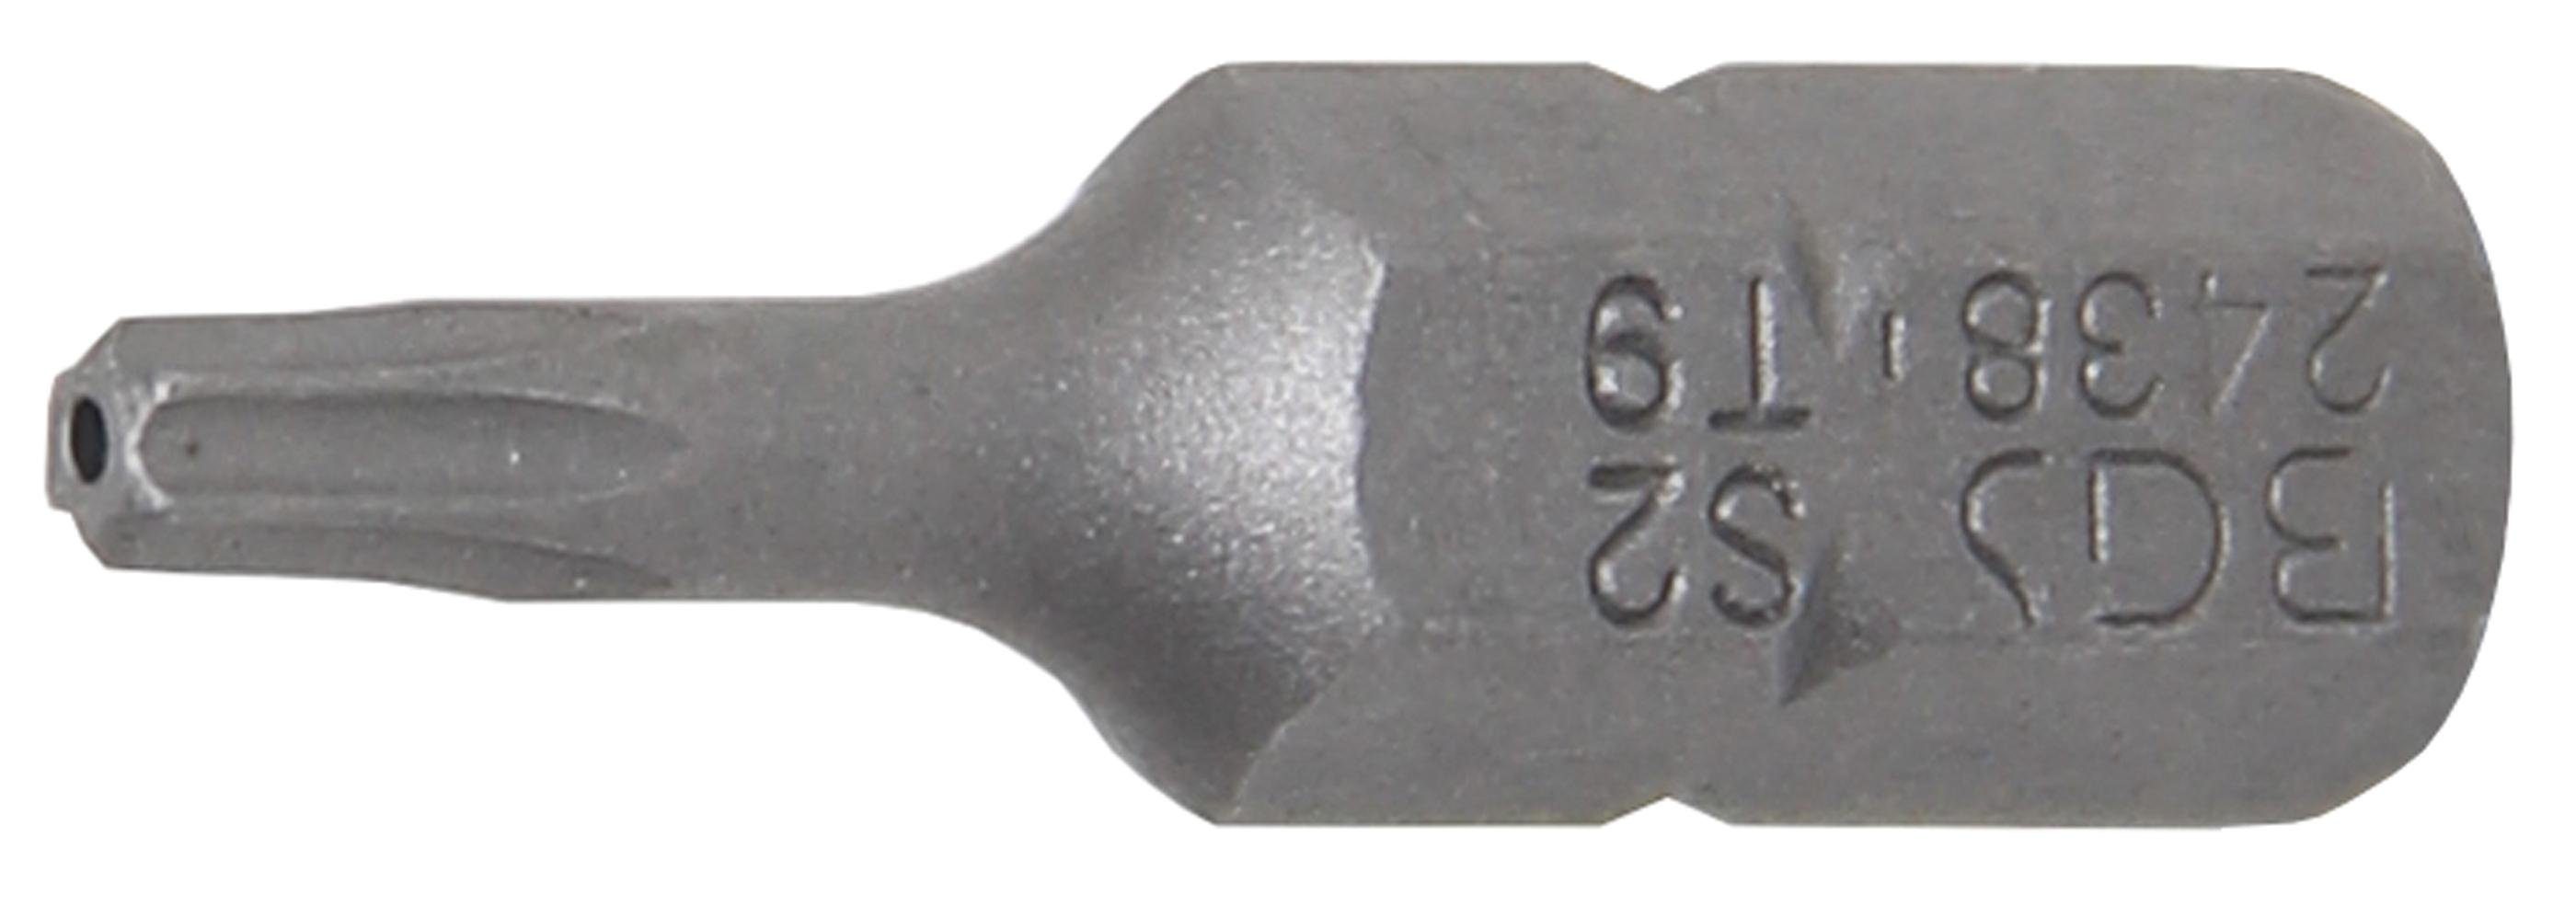 BGS Torx) mm Bit-Schraubendreher mit Bohrung (1/4), technic (für T-Profil 6,3 Außensechskant T9 Antrieb Bit,